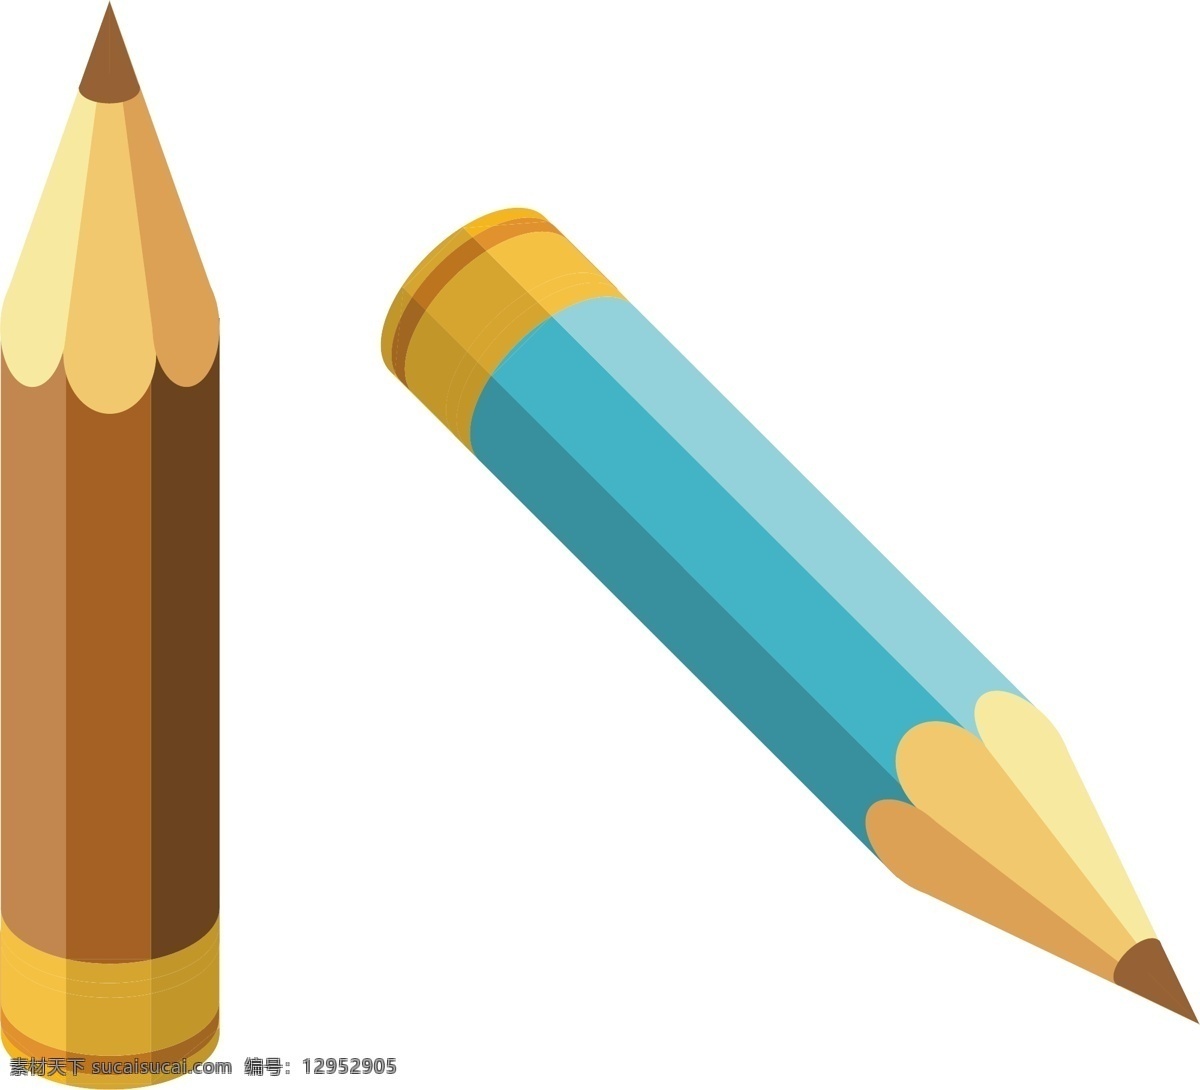 两 根 彩色 铅笔 插画 学习文具铅笔 两根彩色铅笔 教育文具铅笔 卡通铅笔插画 彩色铅笔插画 文具